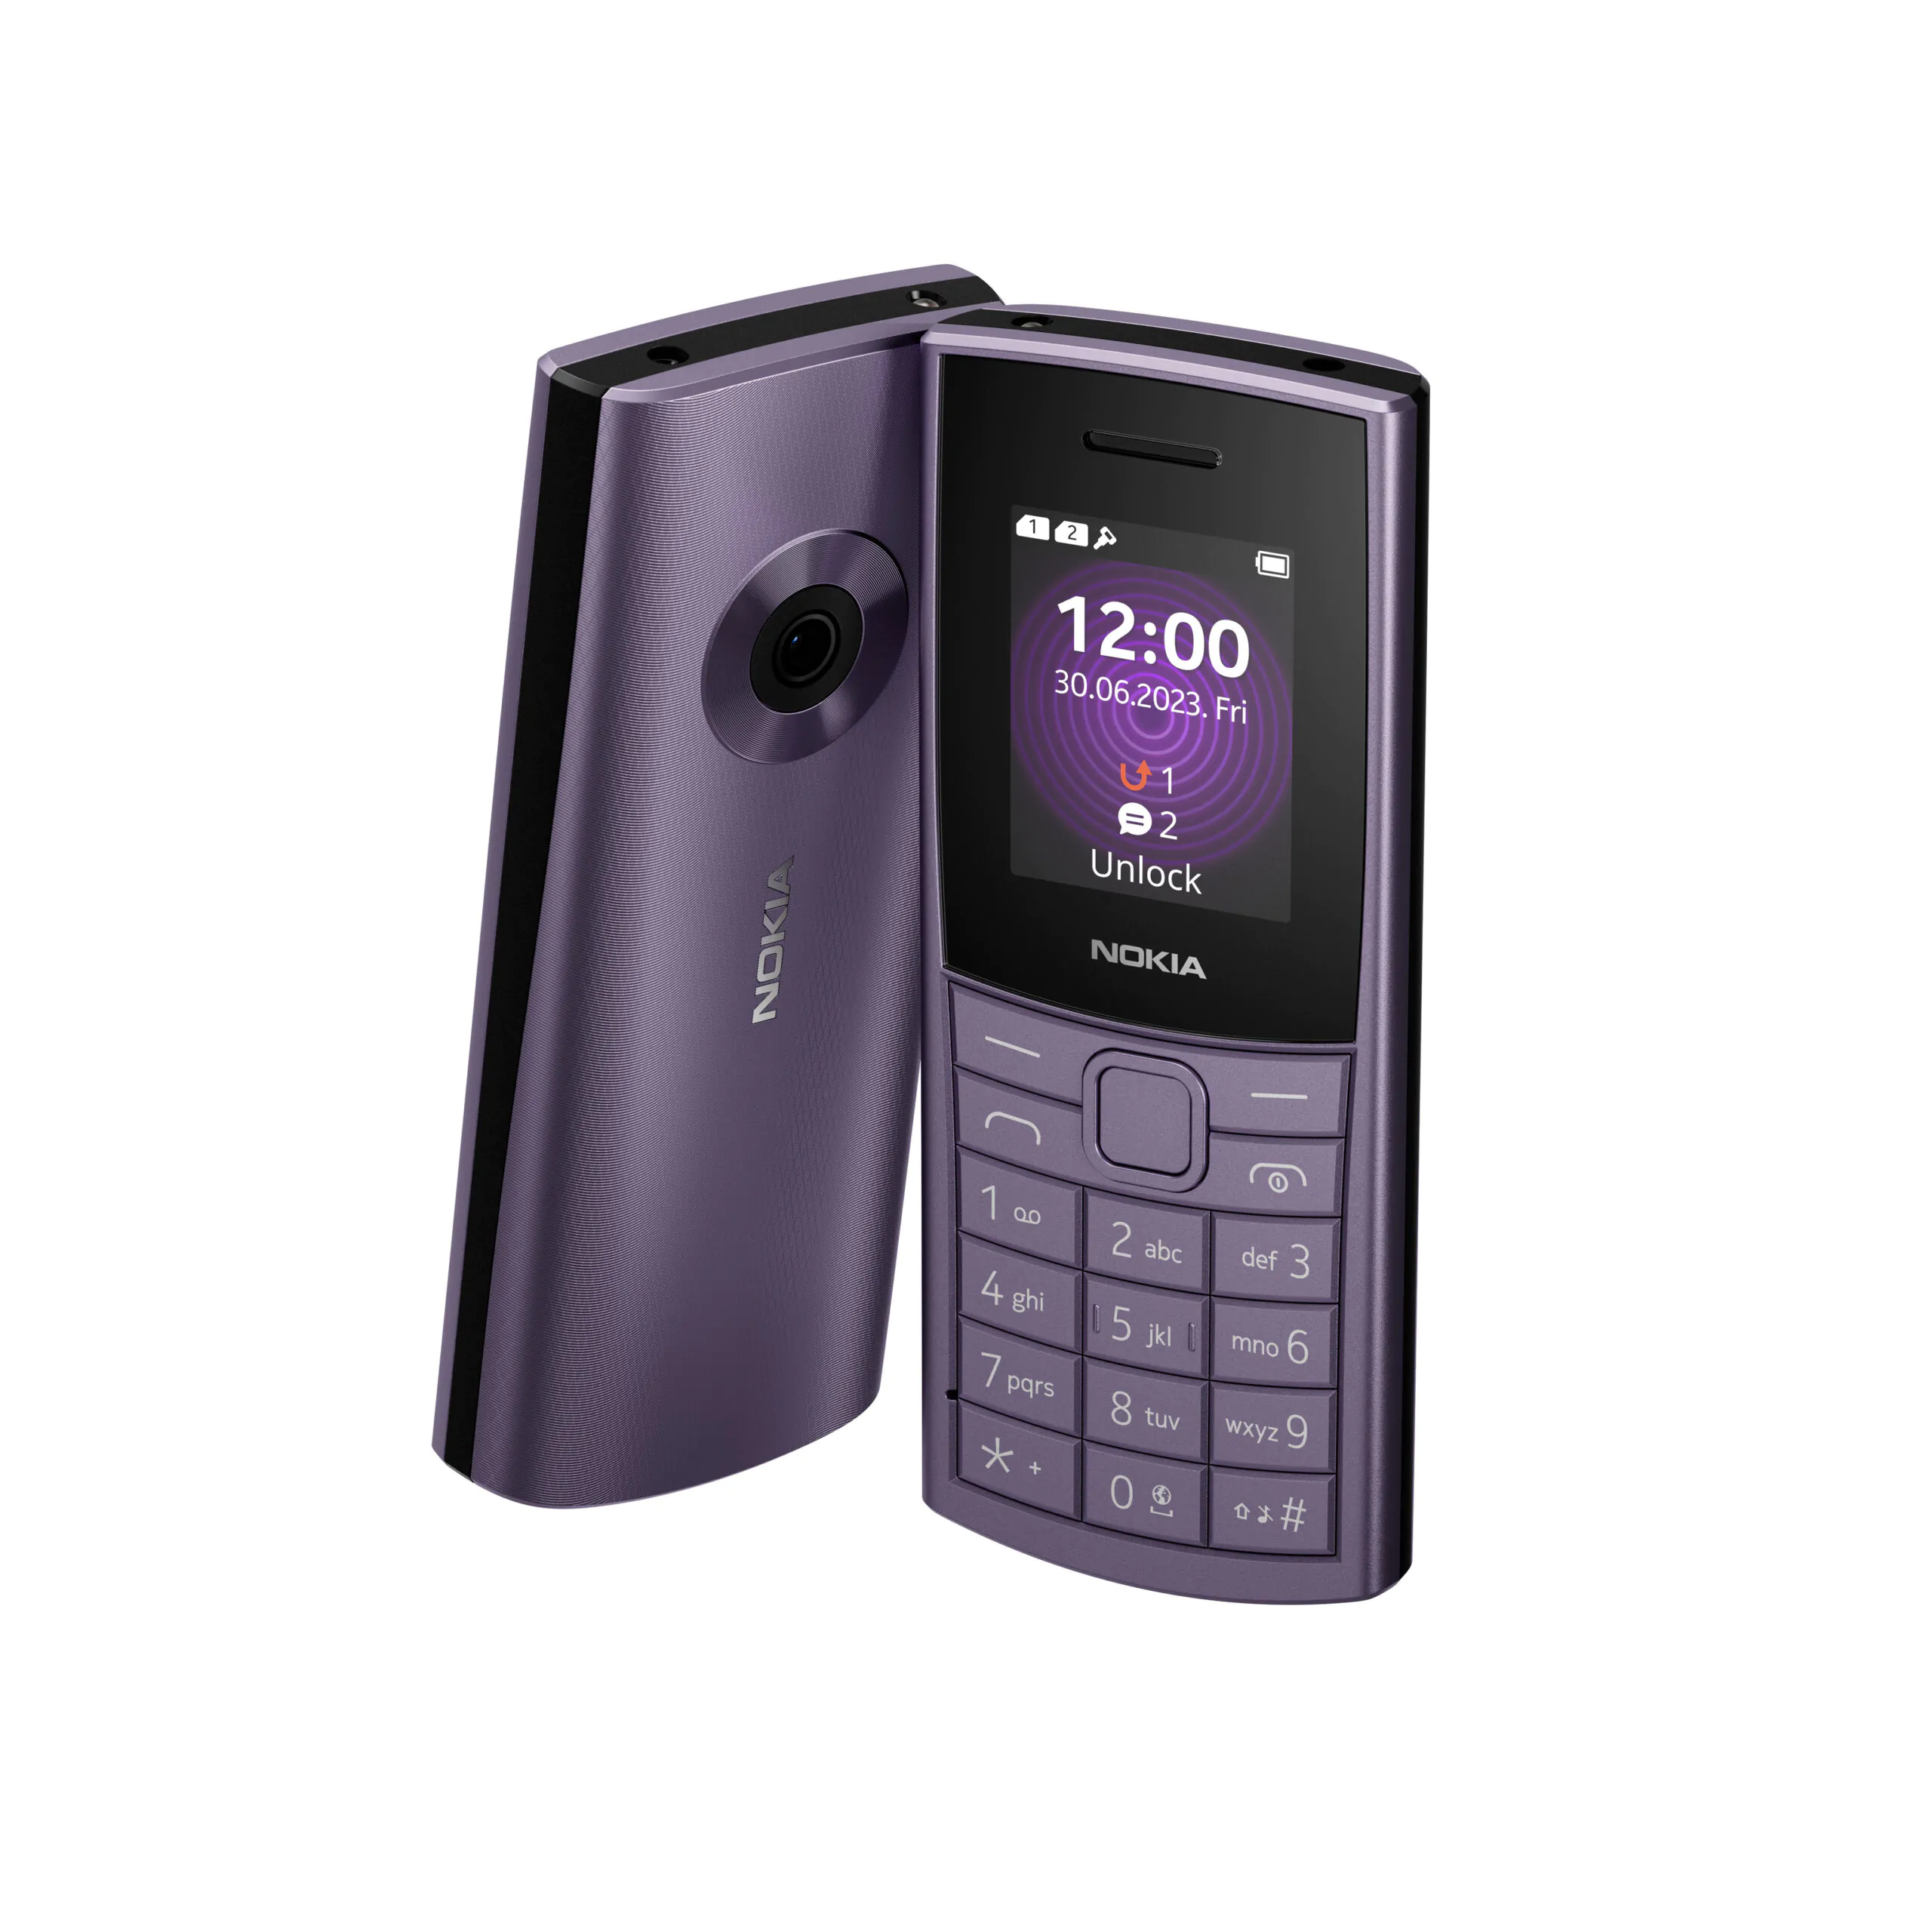 Nokia 110 4G 3 scaled | Nokia 105 4G | โนเกียส่งฟีเจอร์โฟน 2 รุ่นใหม่ Nokia 110 4G และ 105 4G ตอบรับมือถือปุ่มกดยังมีดีมานด์